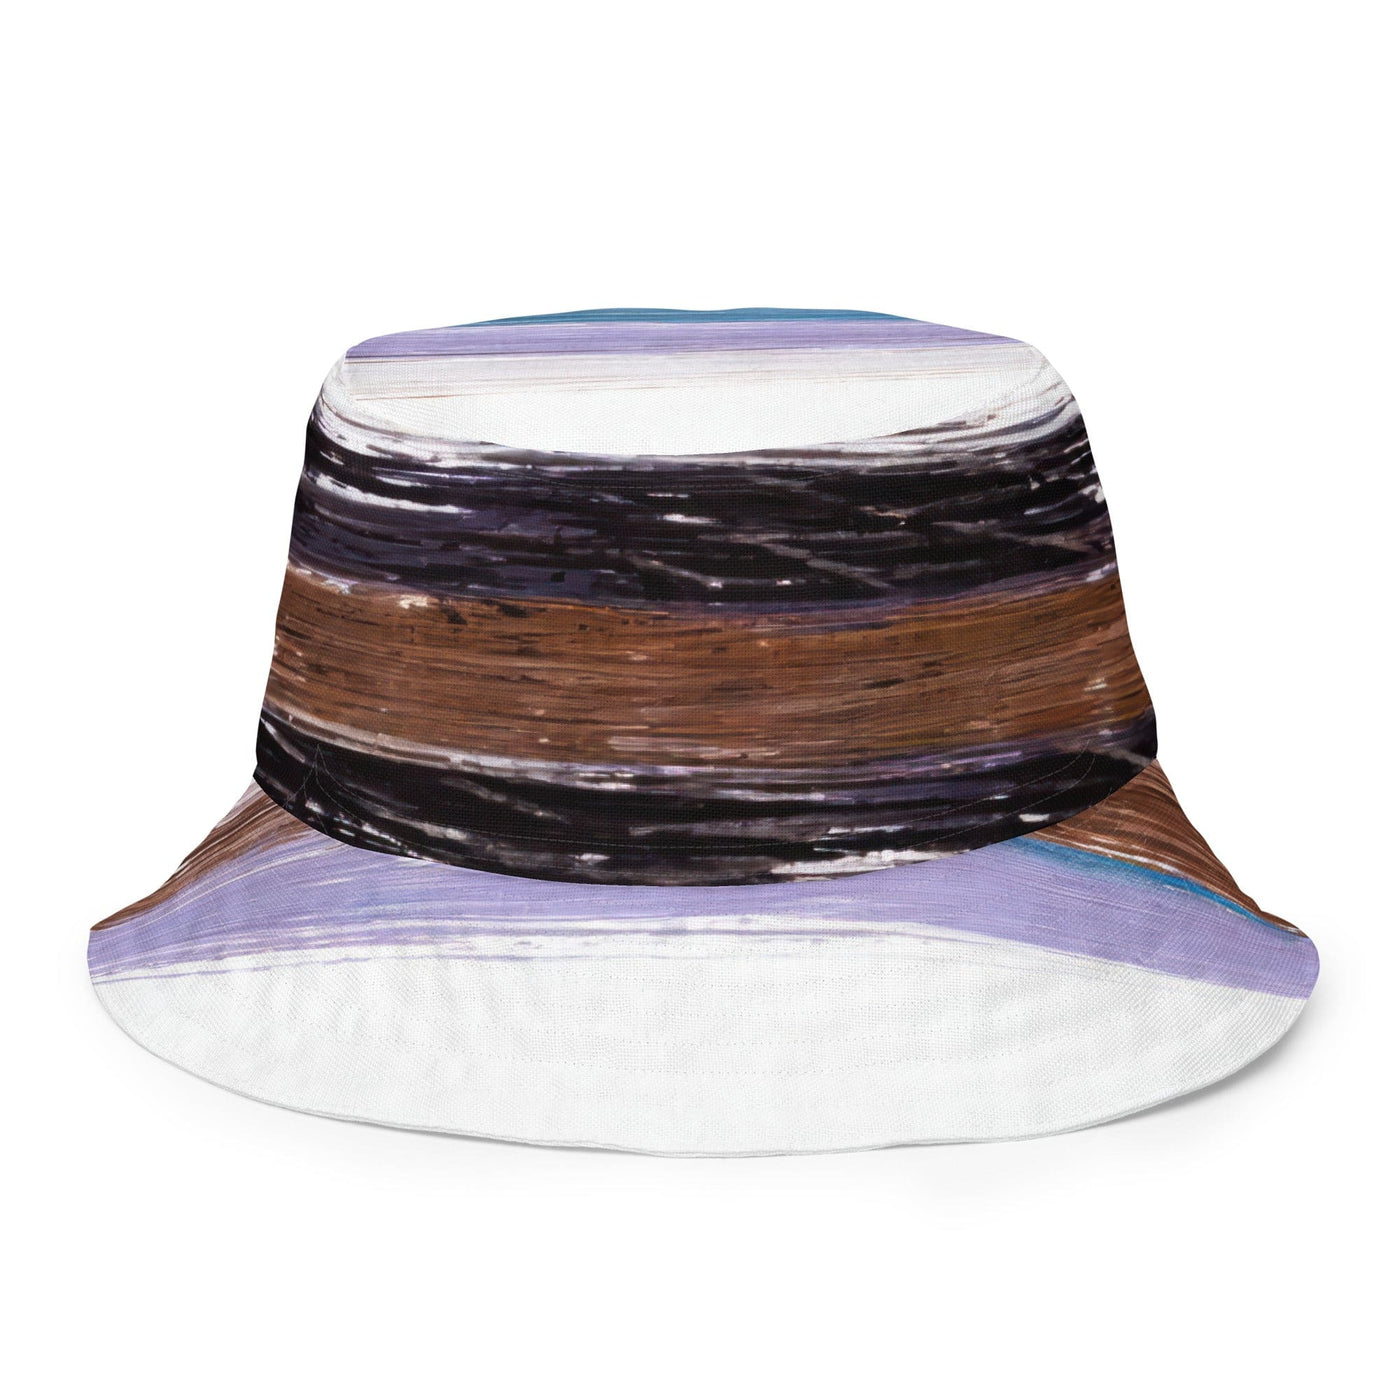 Reversible Bucket Hat Lavender Black Brown Rustic Pattern